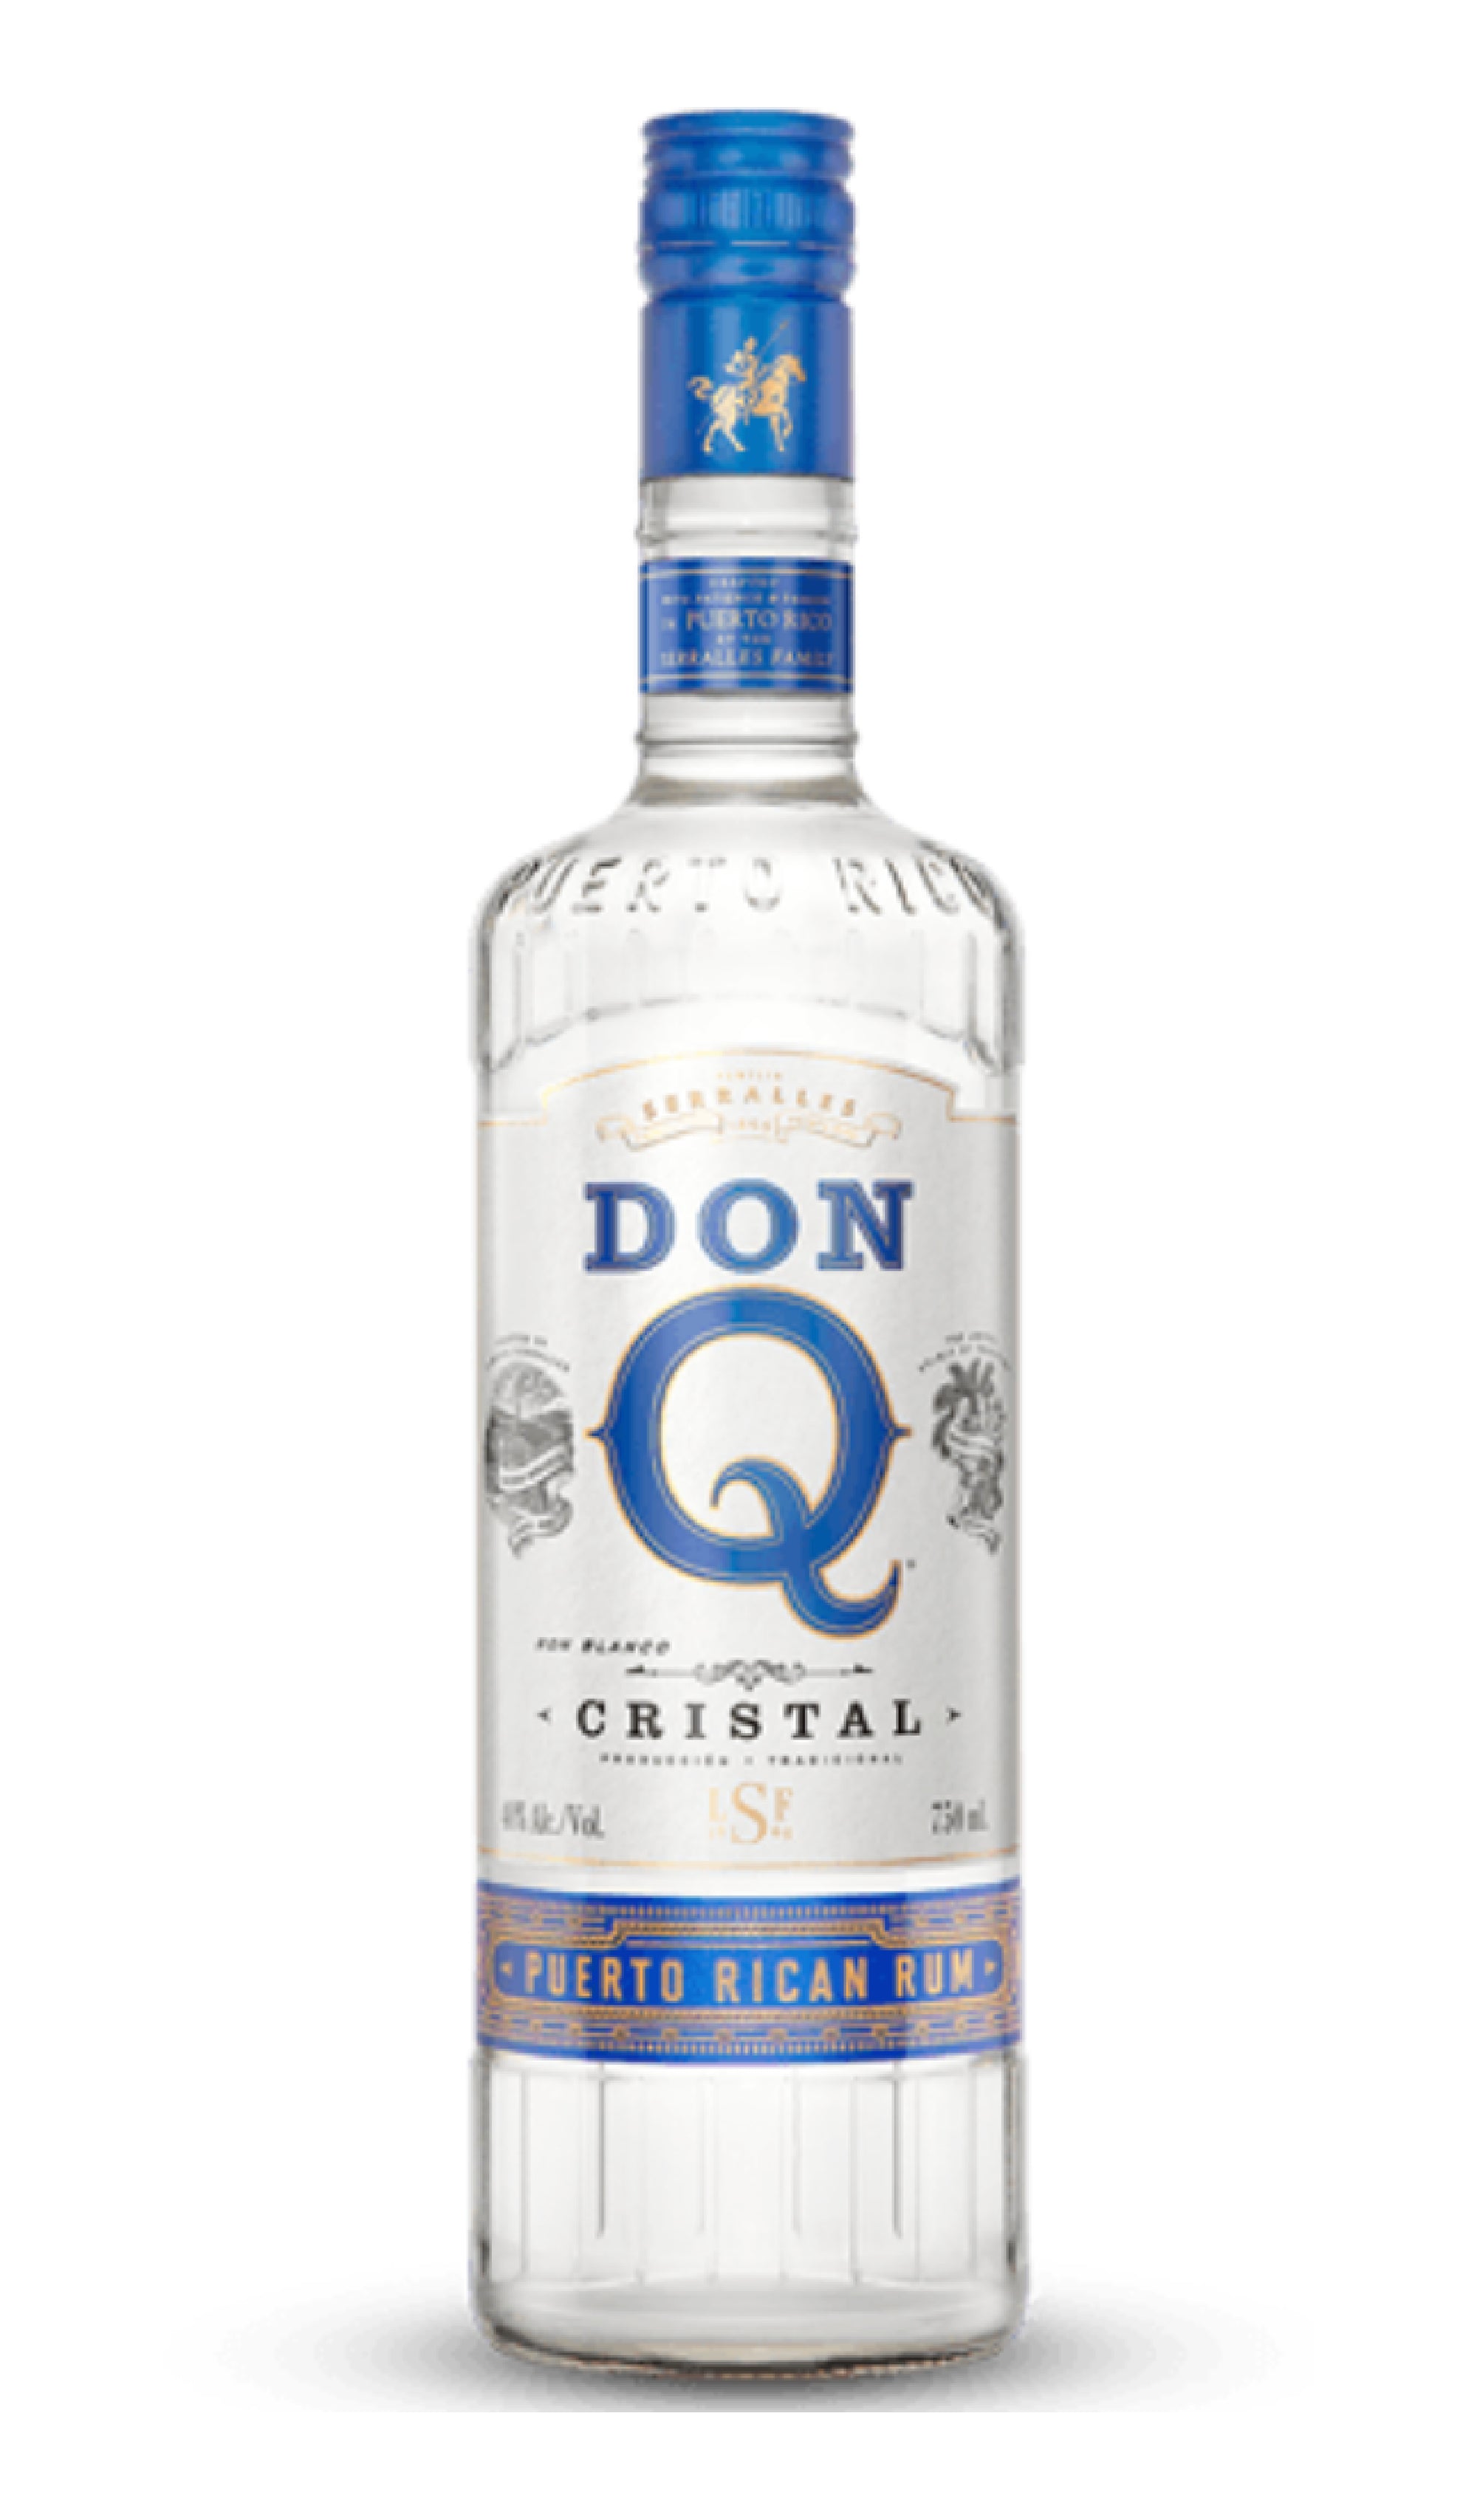 Don Q - "Cristal" Puerto Rico Rum (750ml)